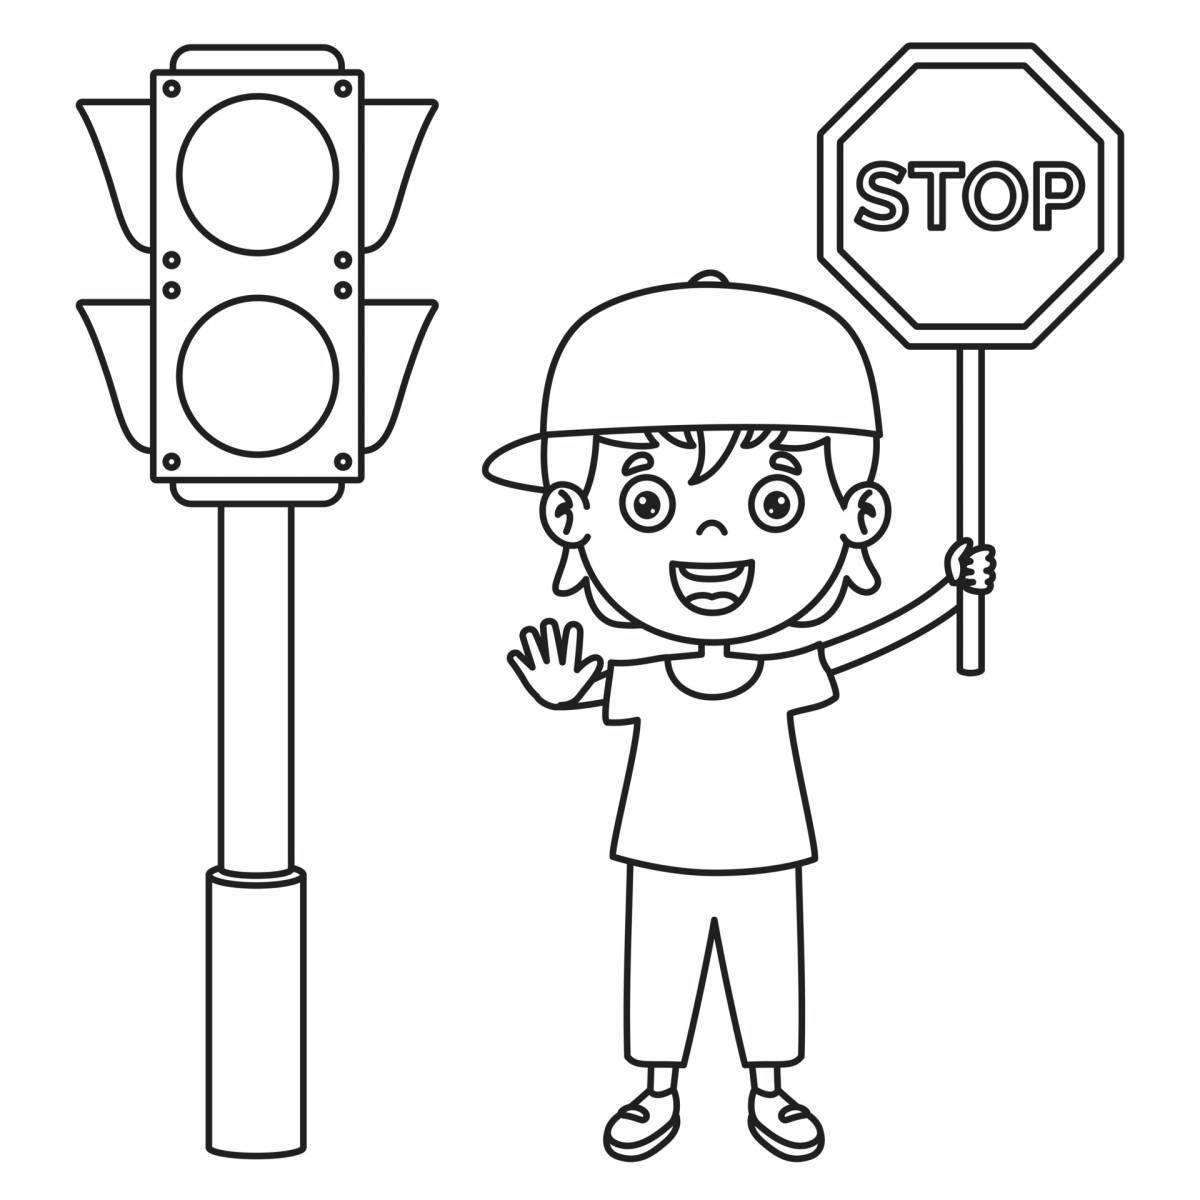 Festive traffic light for pedestrians